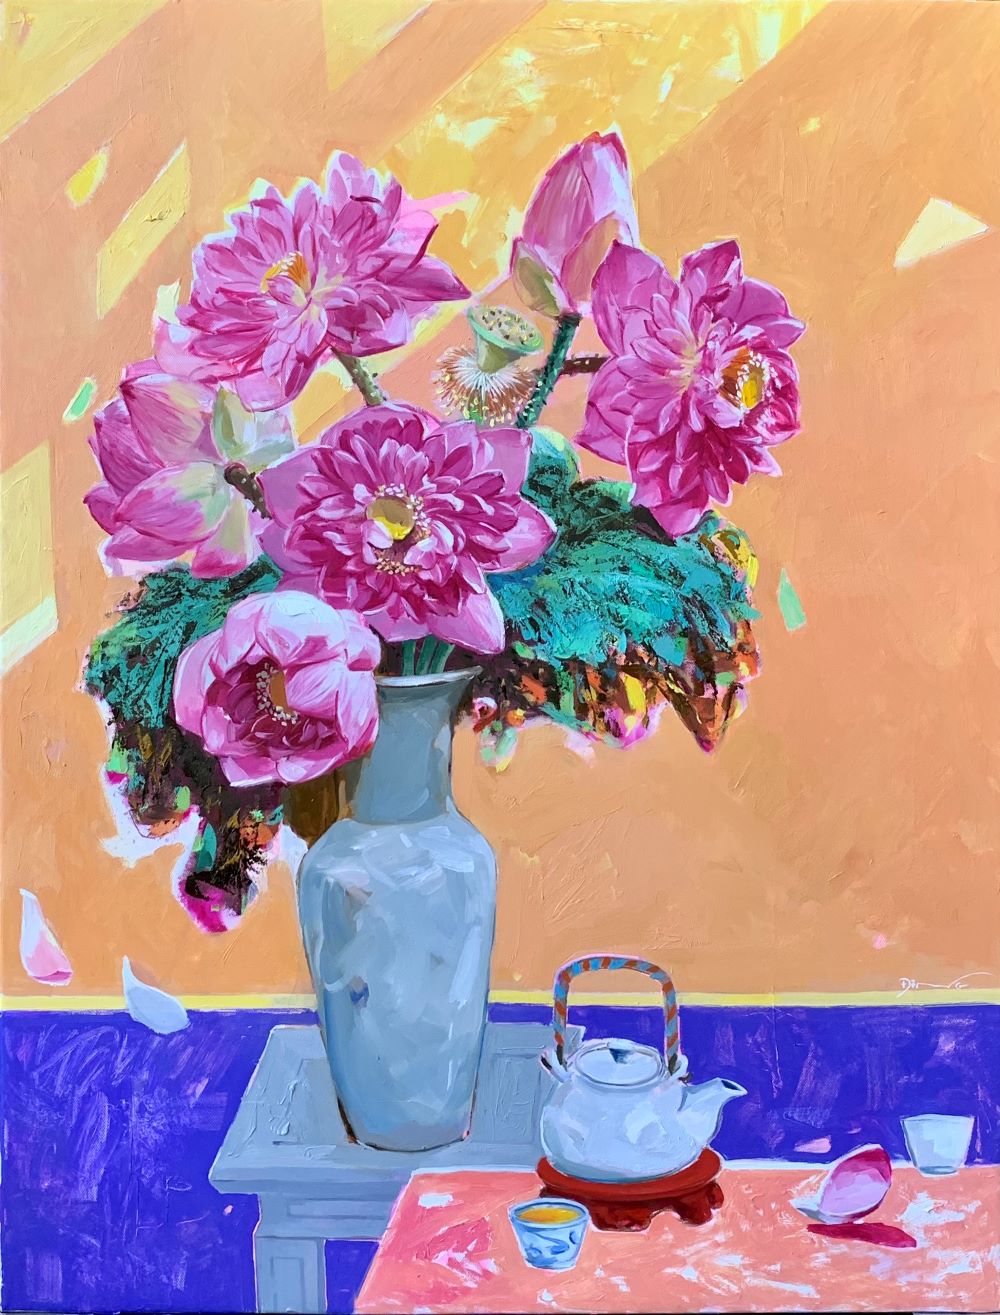 Tranh vẽ bình hoa: Tranh vẽ bình hoa là một dạng tranh nghệ thuật rất đẹp và ấn tượng. Những bức tranh này vô cùng sáng tạo và độc đáo, với những đường nét mảnh mai và màu sắc tươi tắn. Đó sẽ là một bức tranh hoàn hảo để trang trí cho phòng khách của bạn.